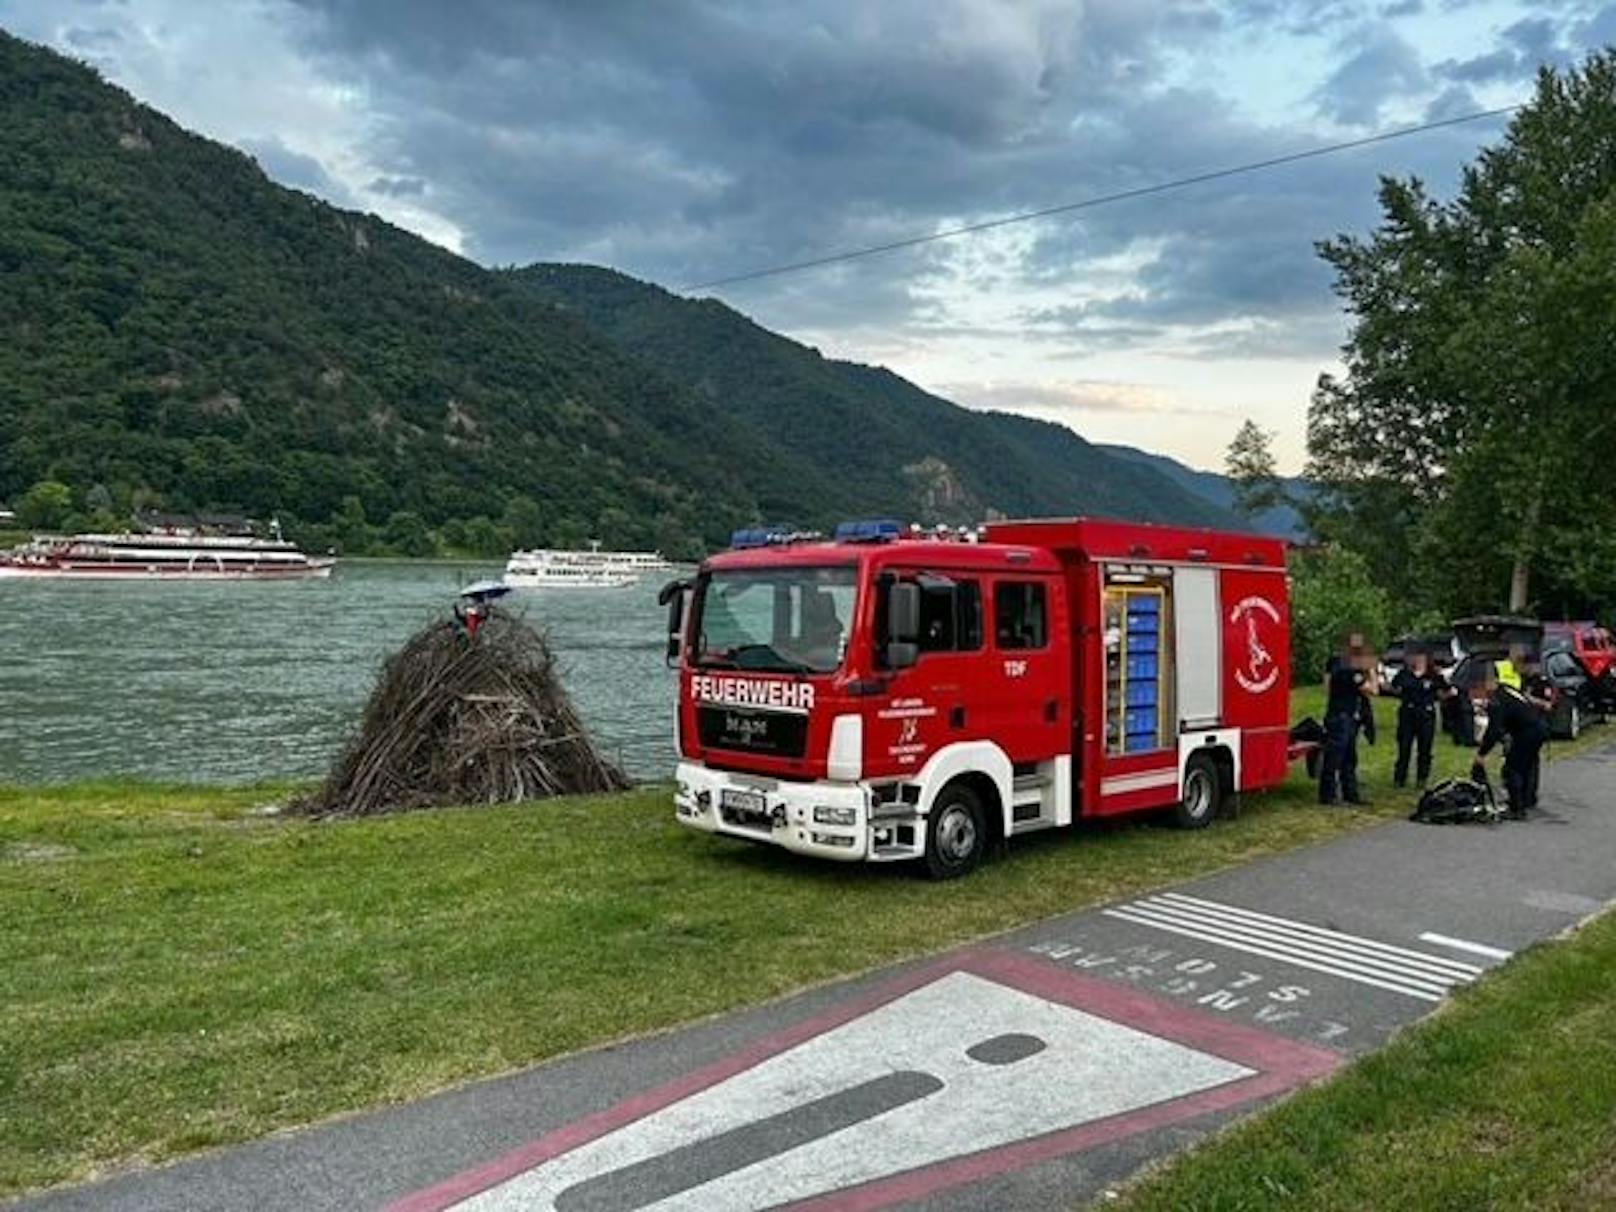 Nach Sprung in Donau! 33-Jähriger ertrank in der Donau